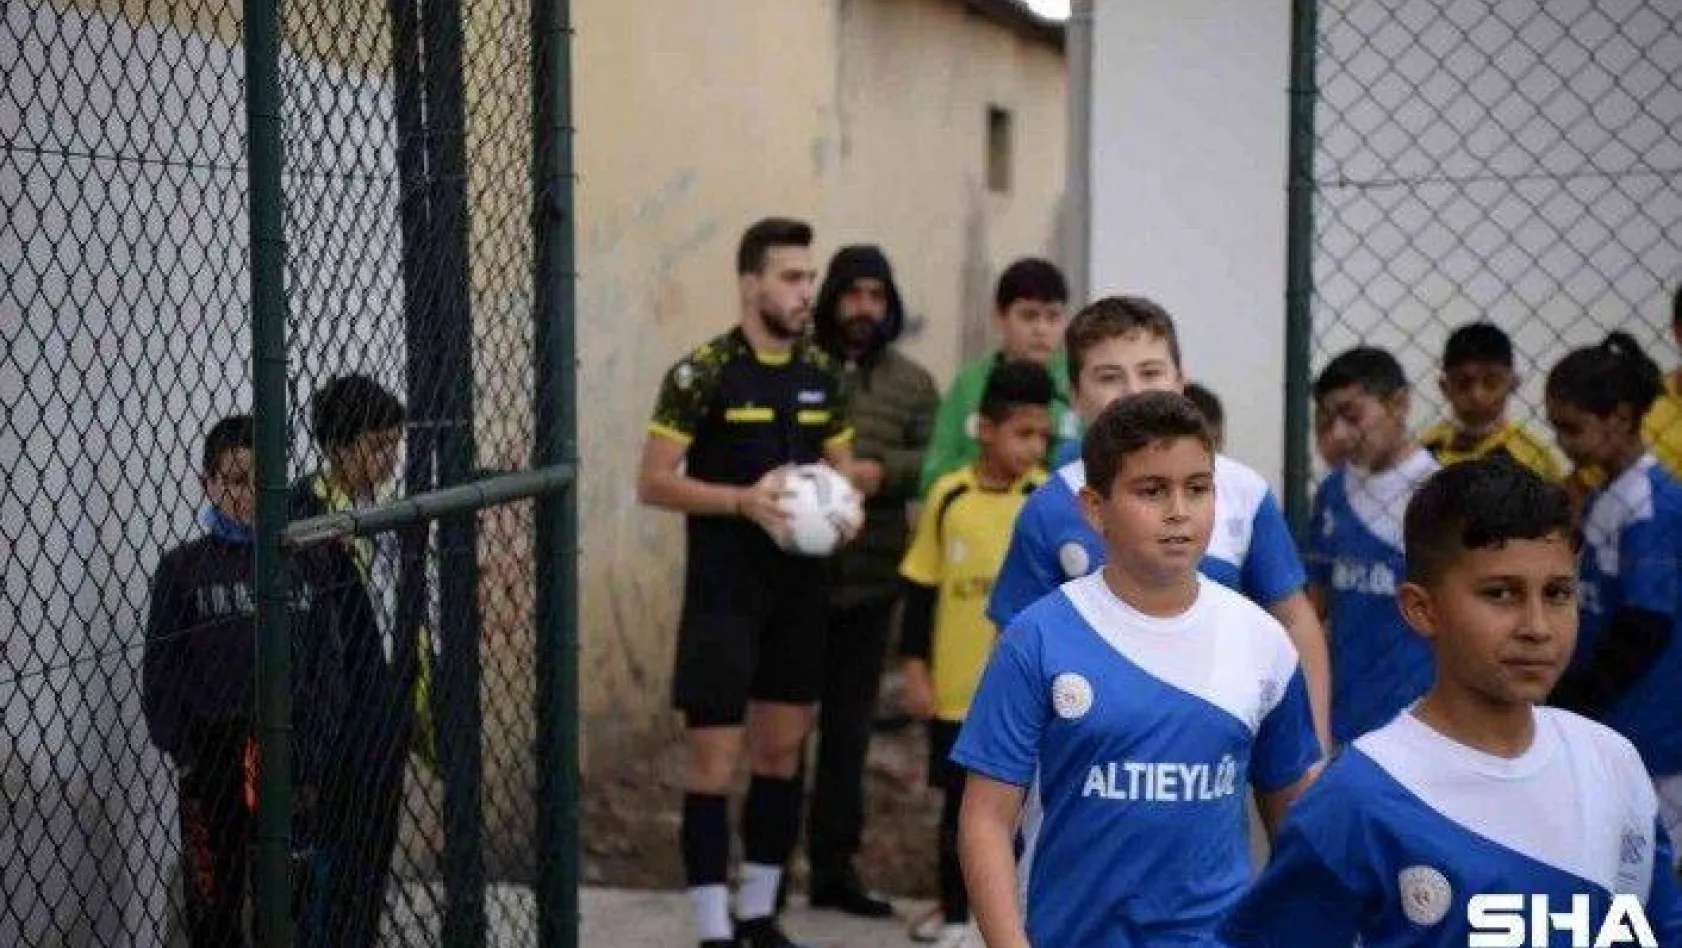 Altıeylül çocuk futbol turnuvası başladı